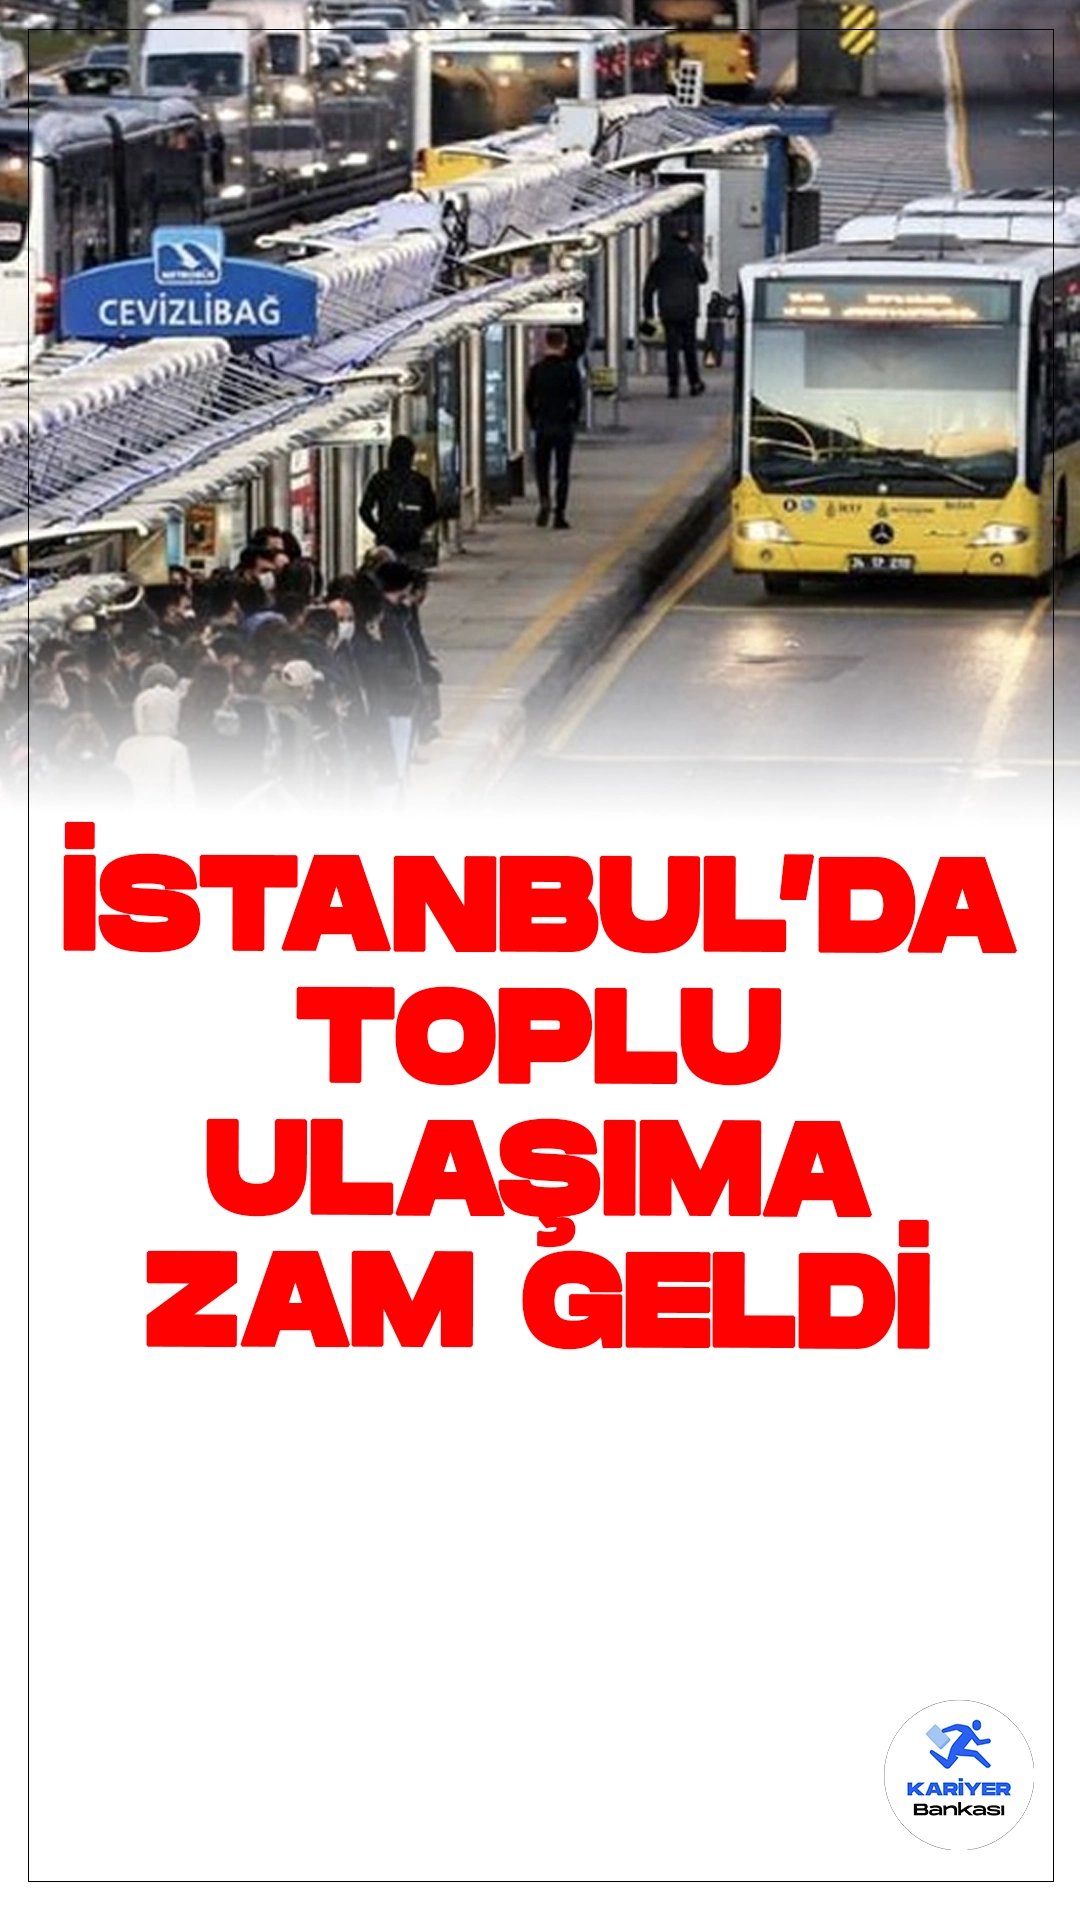 İstanbul'da Toplu Taşımaya Zam: Yeni Ücret Tarifesi Açıklandı.İstanbul’da toplu taşıma ücretlerine yüzde 13 zam yapıldı. Yeni tarifeye göre, 17,70 TL olan tam basım ücreti 20 TL’ye yükseltildi. Öğrencilerin bir basım ücreti ise yüzde 20 zamla 10 TL’den 12 TL’ye çıkarıldı. Ayrıca, öğrenci aylık abonman ücreti 250 TL’den 282,5 TL’ye yükseldi.